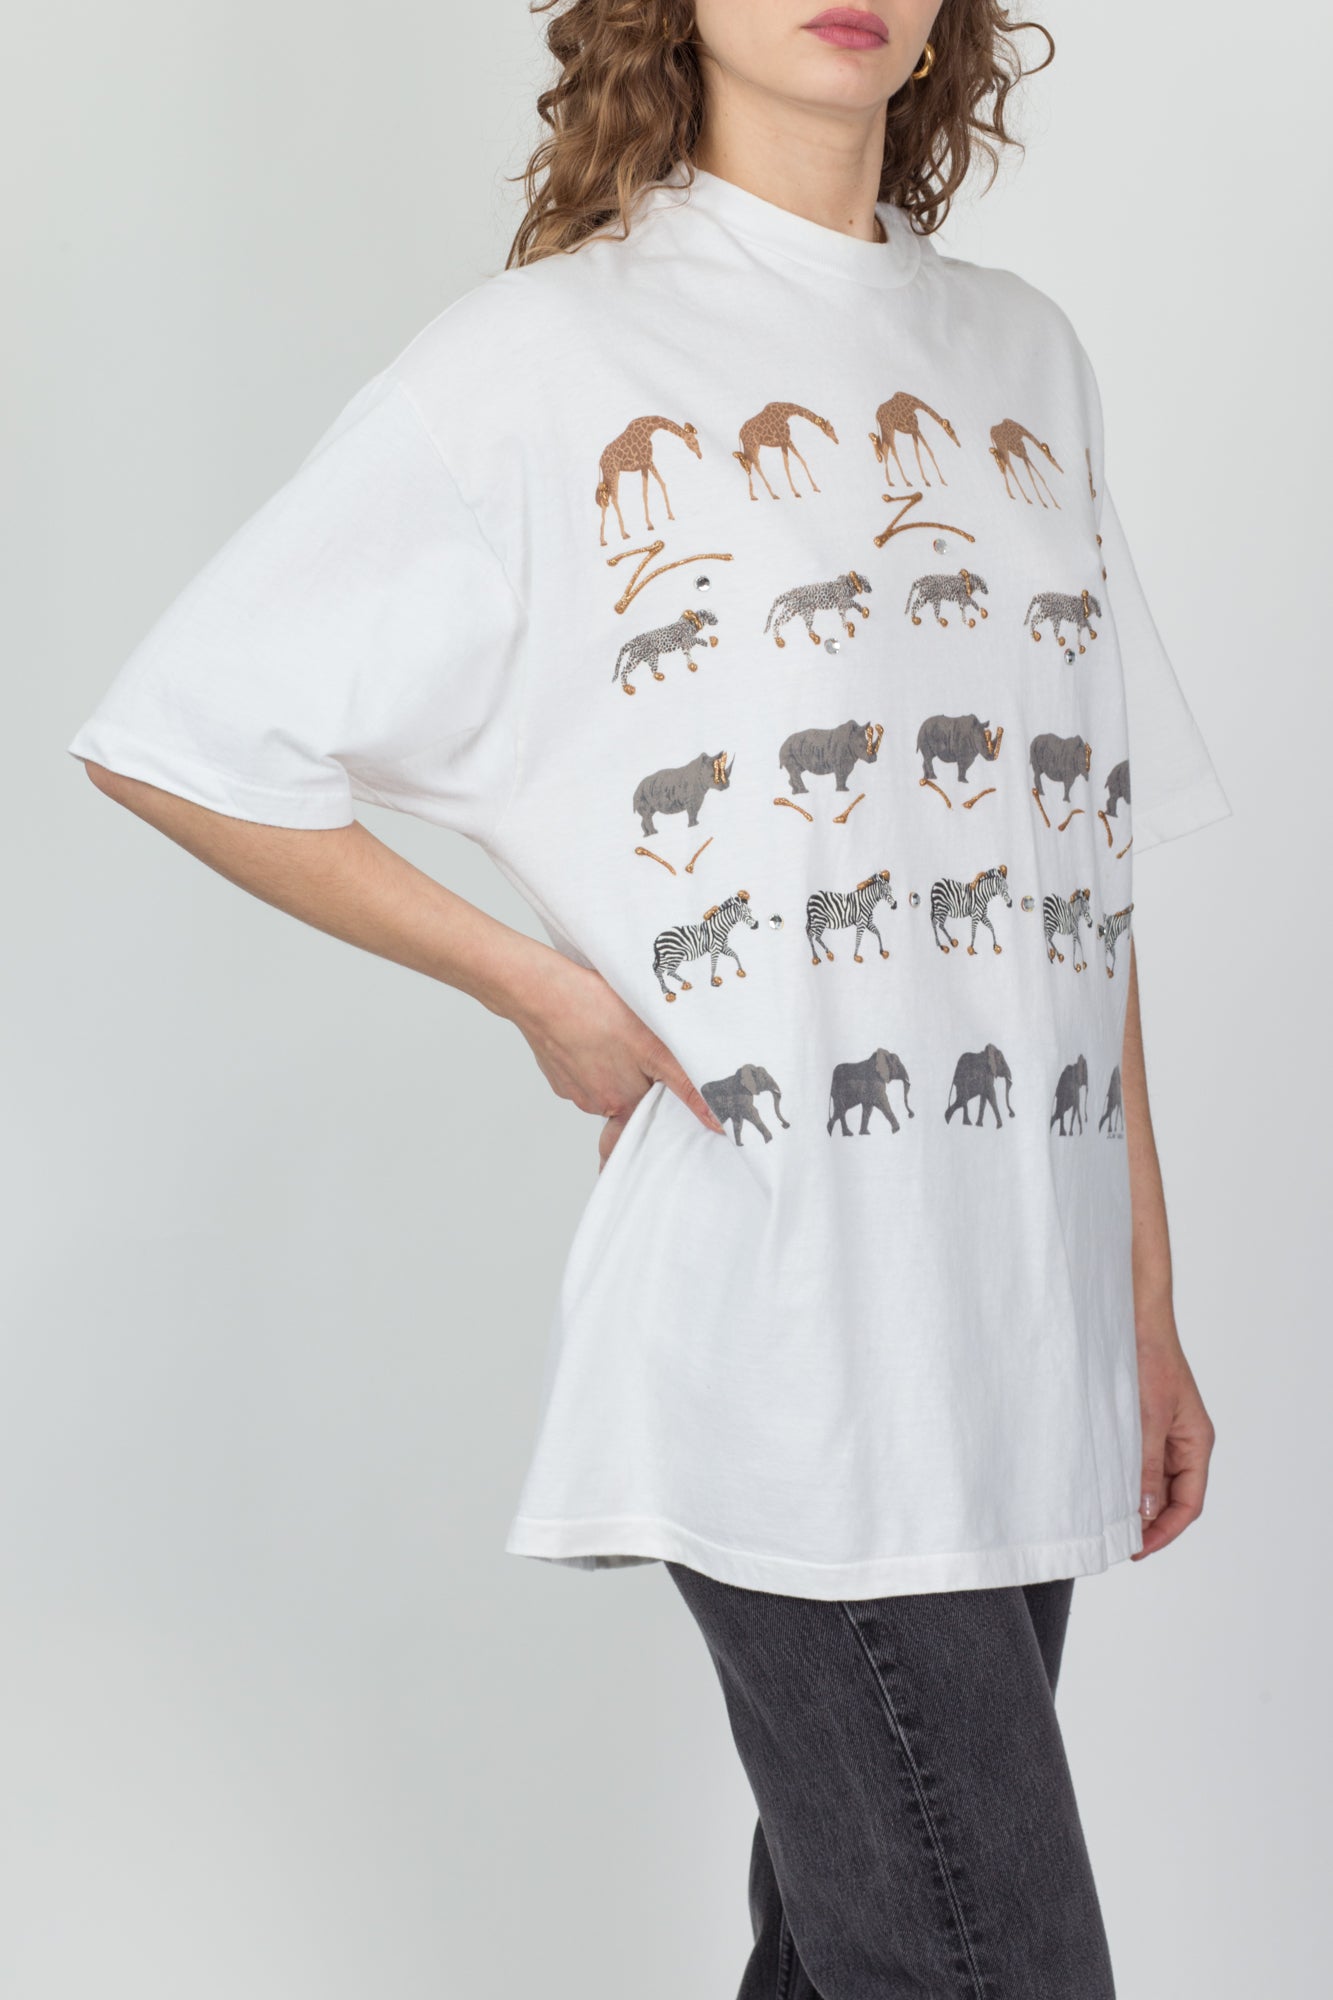 90s African Animal Puff Paint T Shirt - Men's XL, Women's XXL